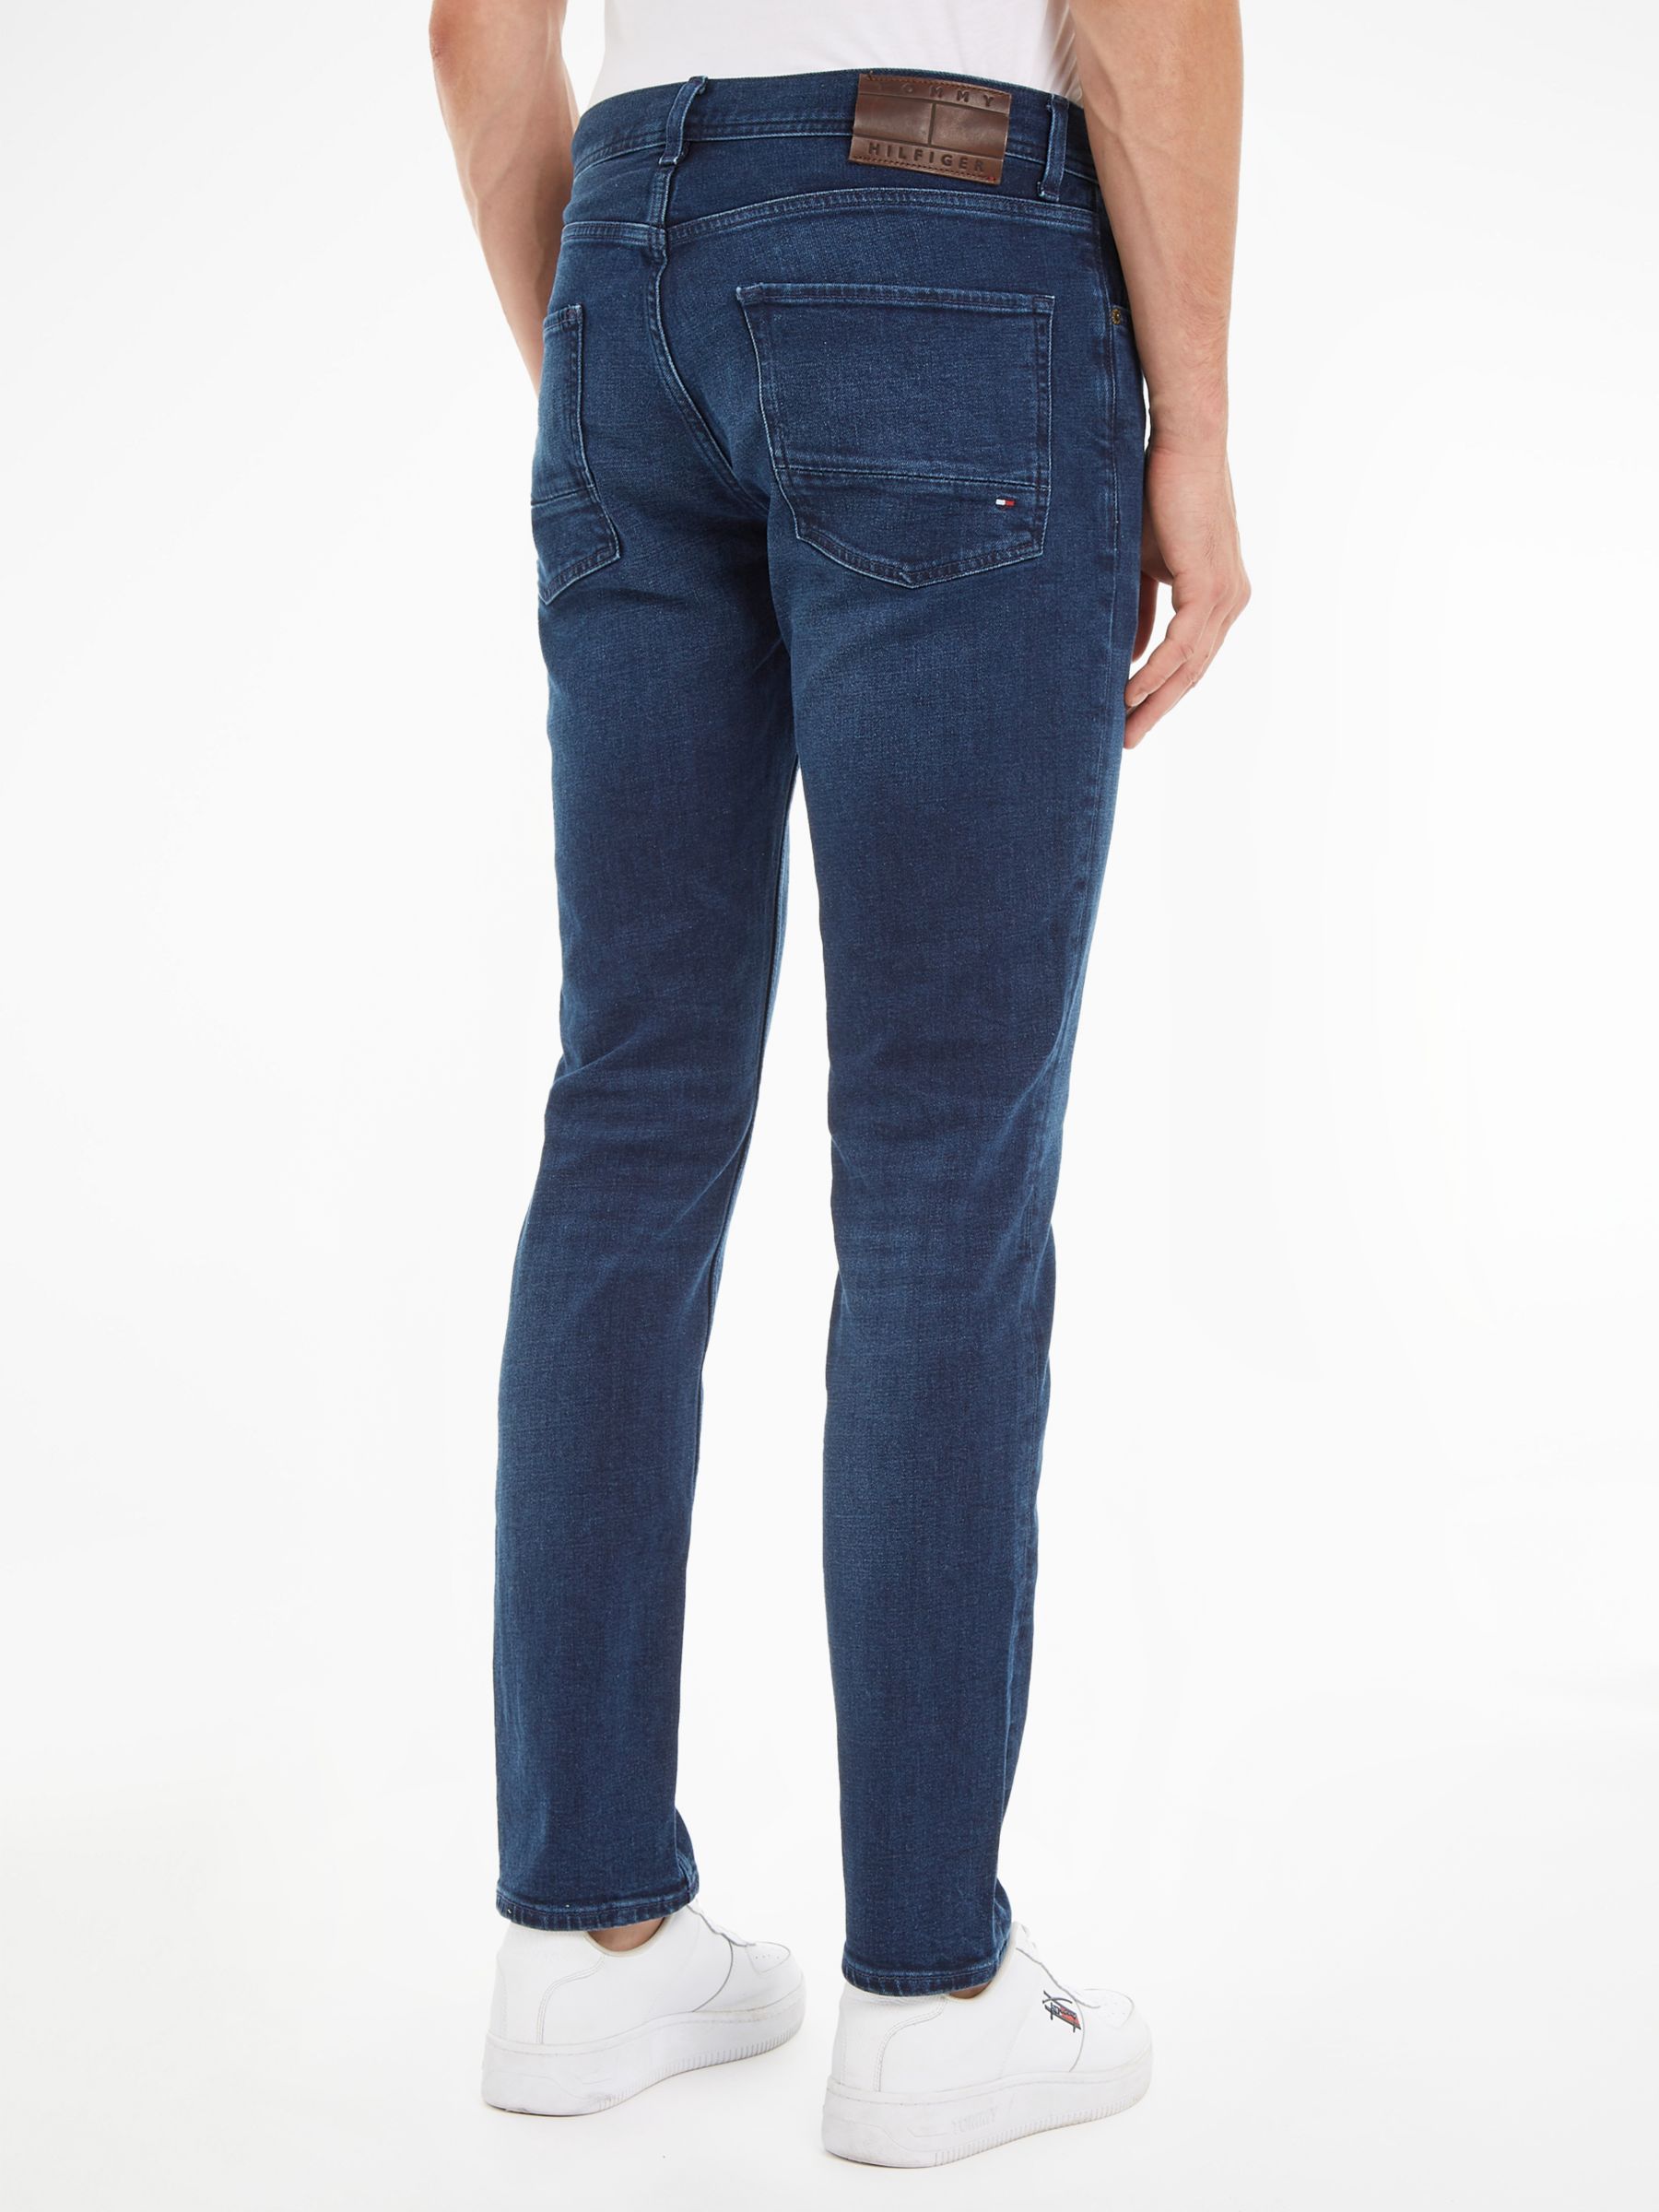 Rodd & Gunn Motion 2 Straight Fit Regular Length Jeans, Rl Stone at John  Lewis & Partners